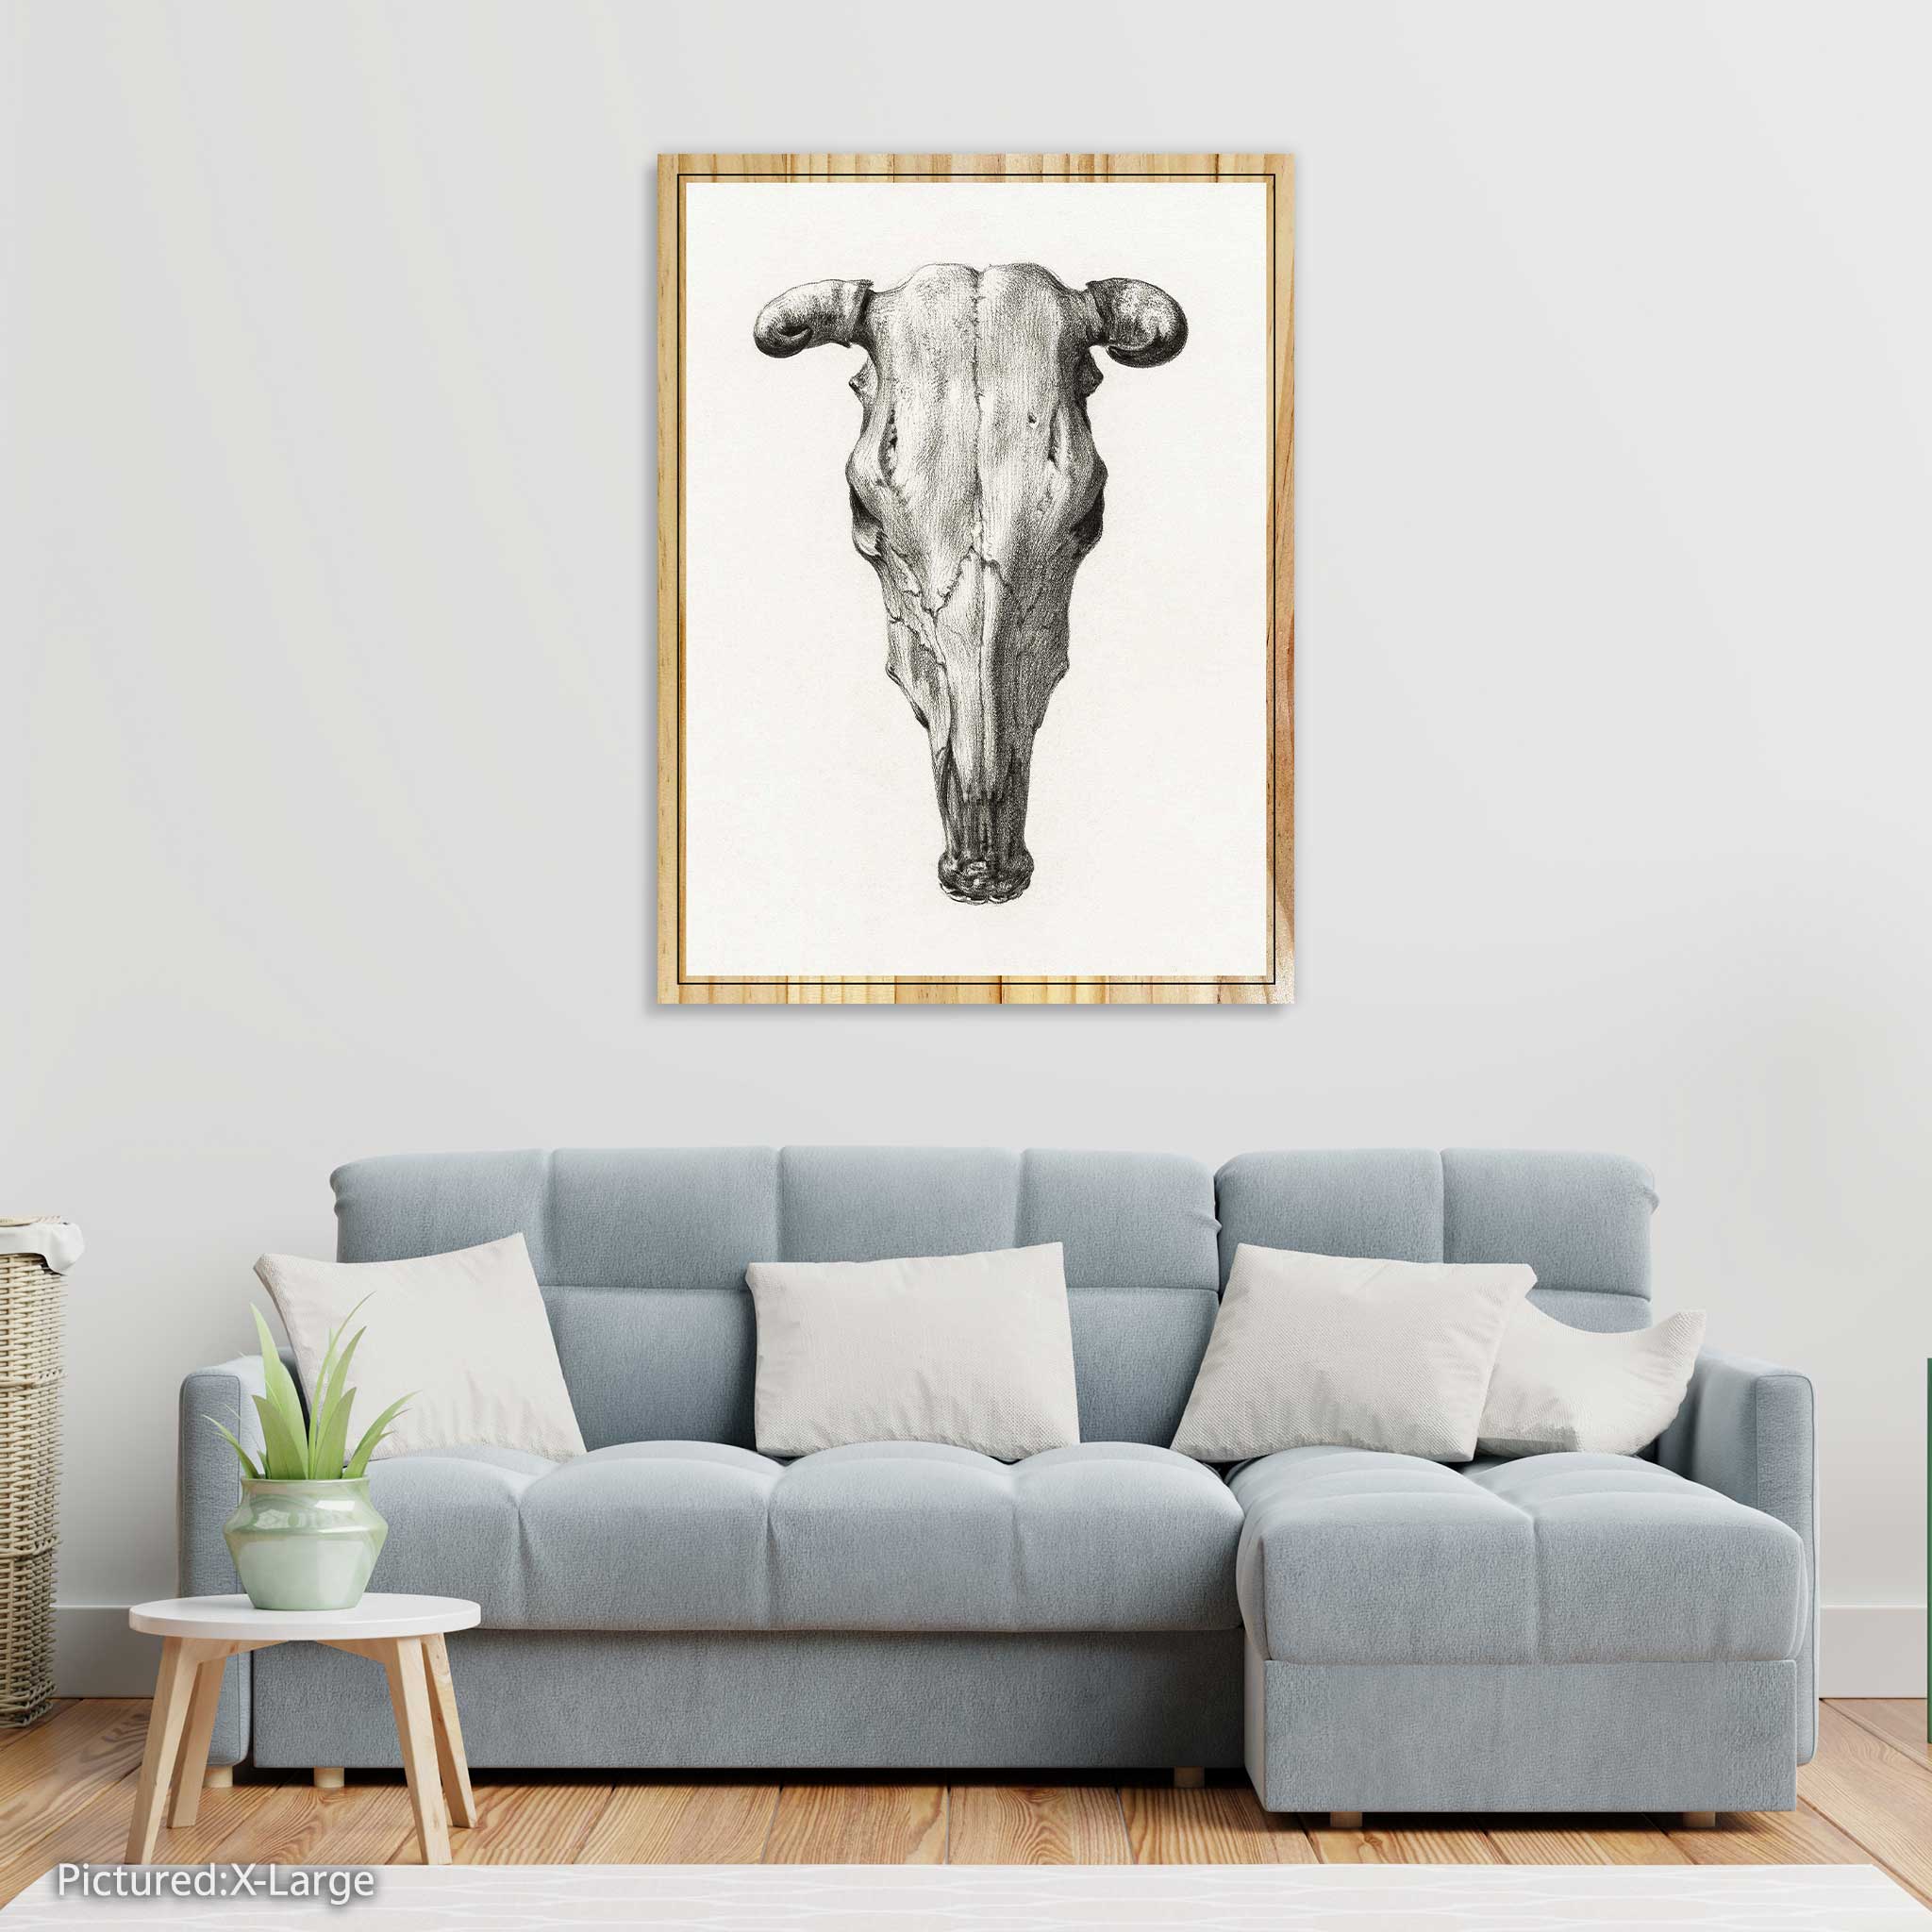 Skull of a Cow by Jean Bernard